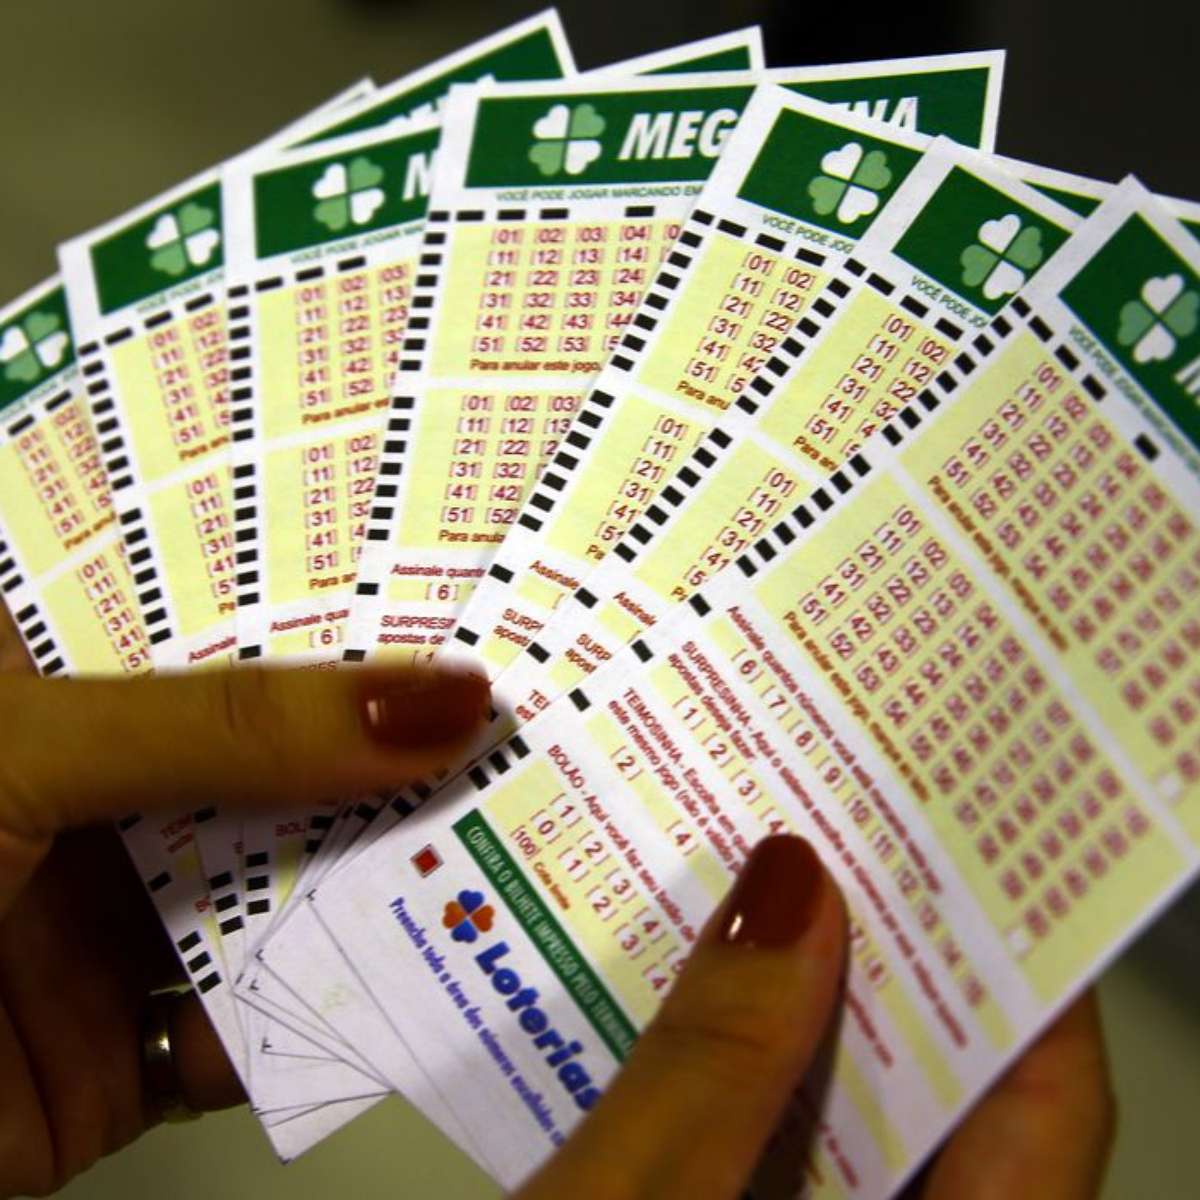 Aprenda de que forma jogar online na loteria da quina pelo celular - Minilua